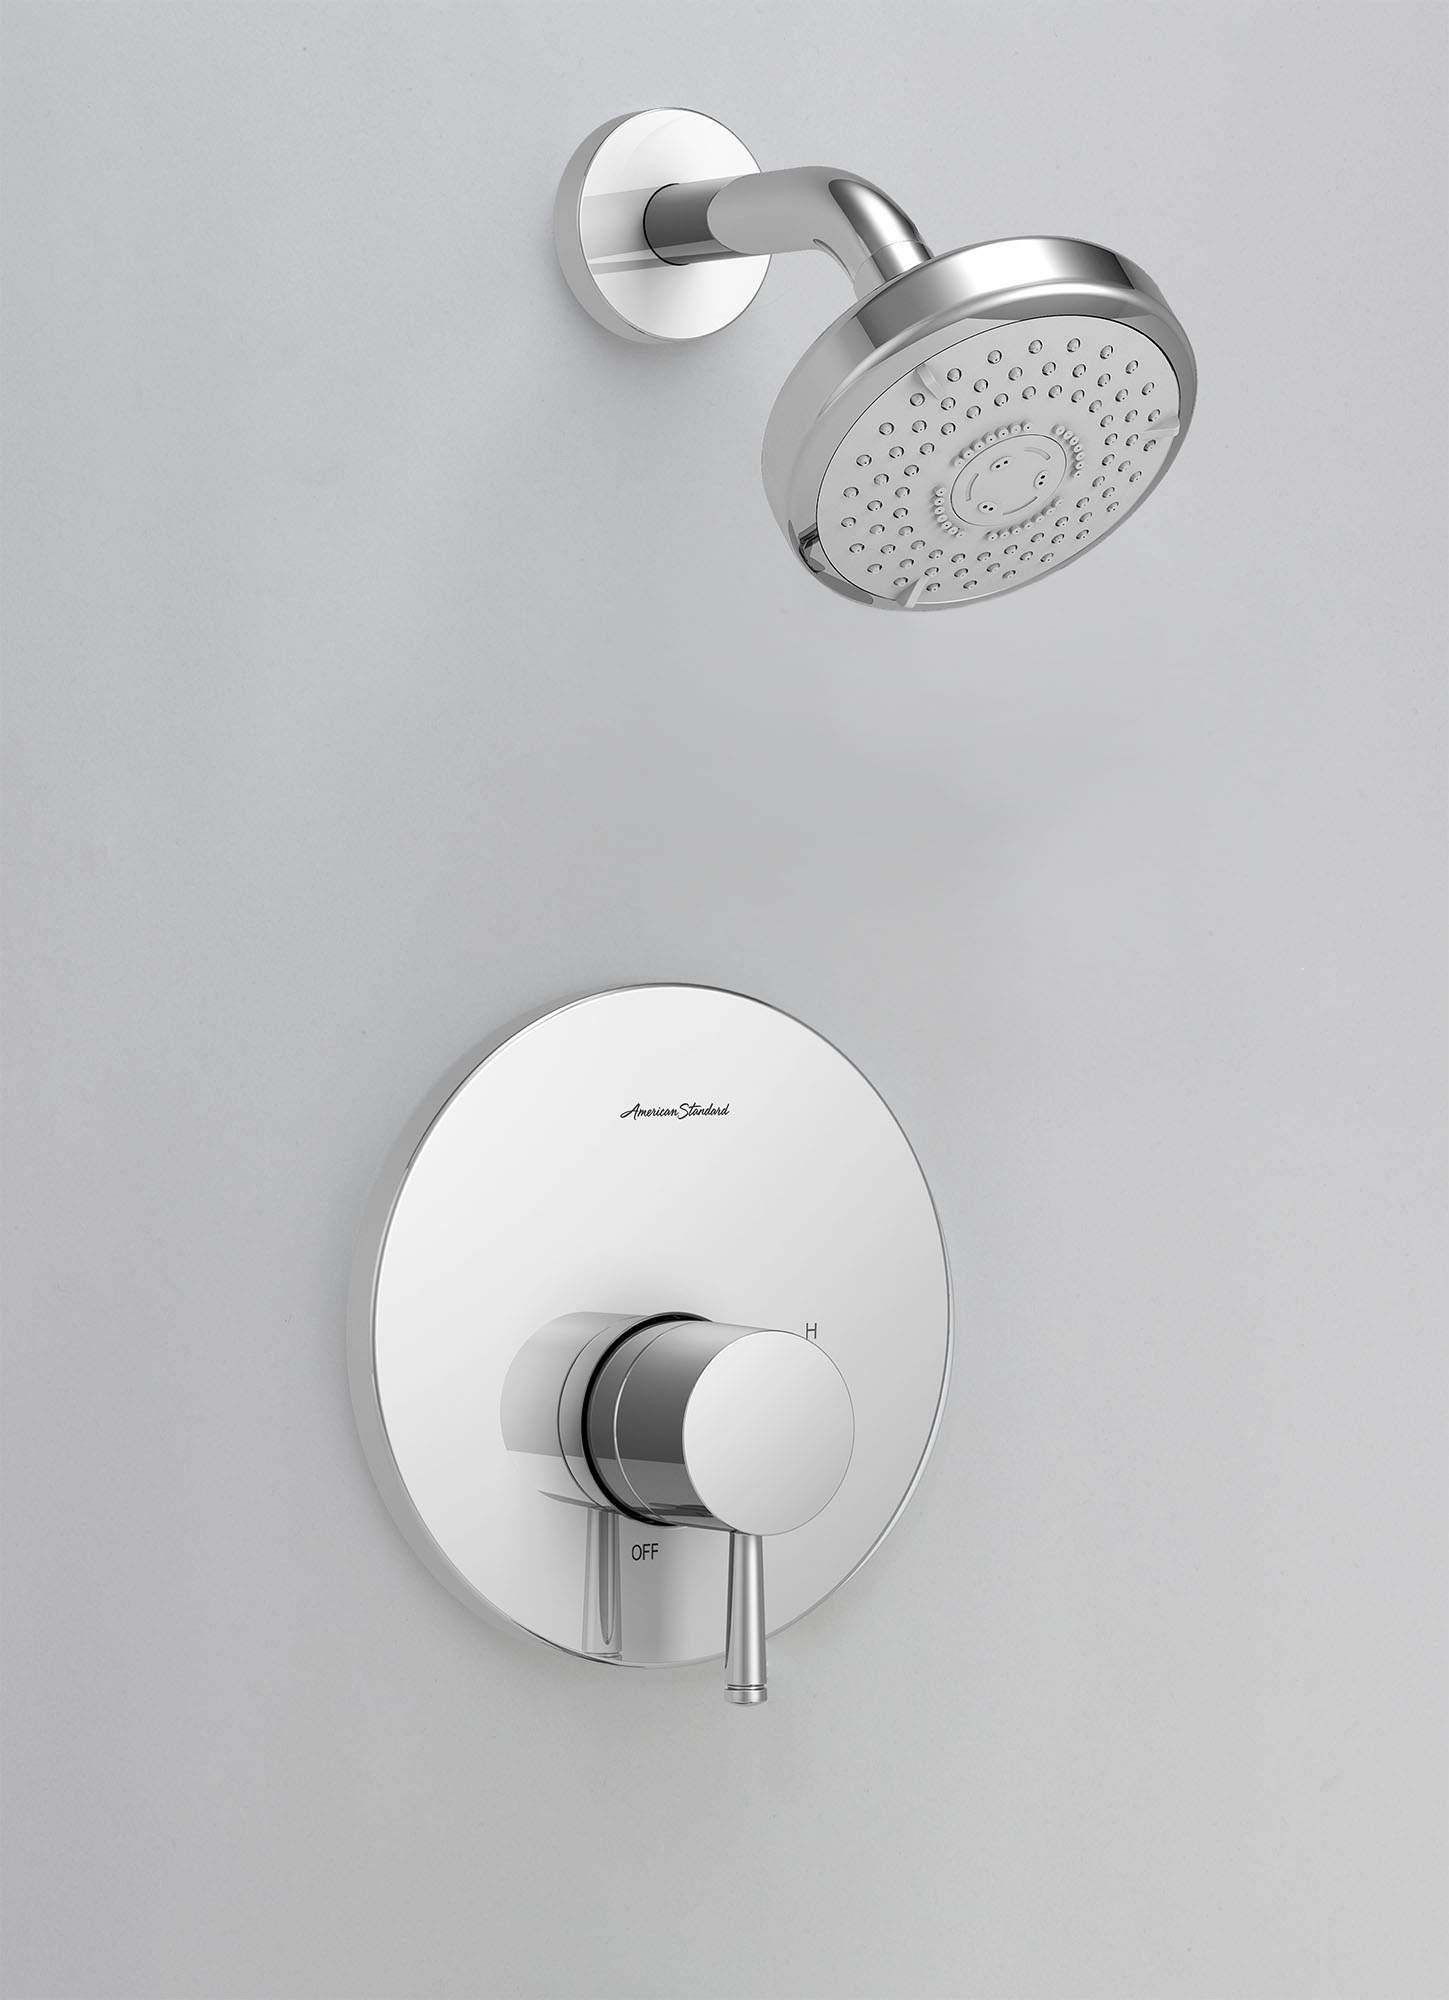 SerinMC - Ensemble de robinetterie pour douche 1,75 gpm/6,6 L/min incluant une pomme de douche 3 fonctions à économie d'eau, une cartouche à pression équilibrée en double céramique et une poignée à levier